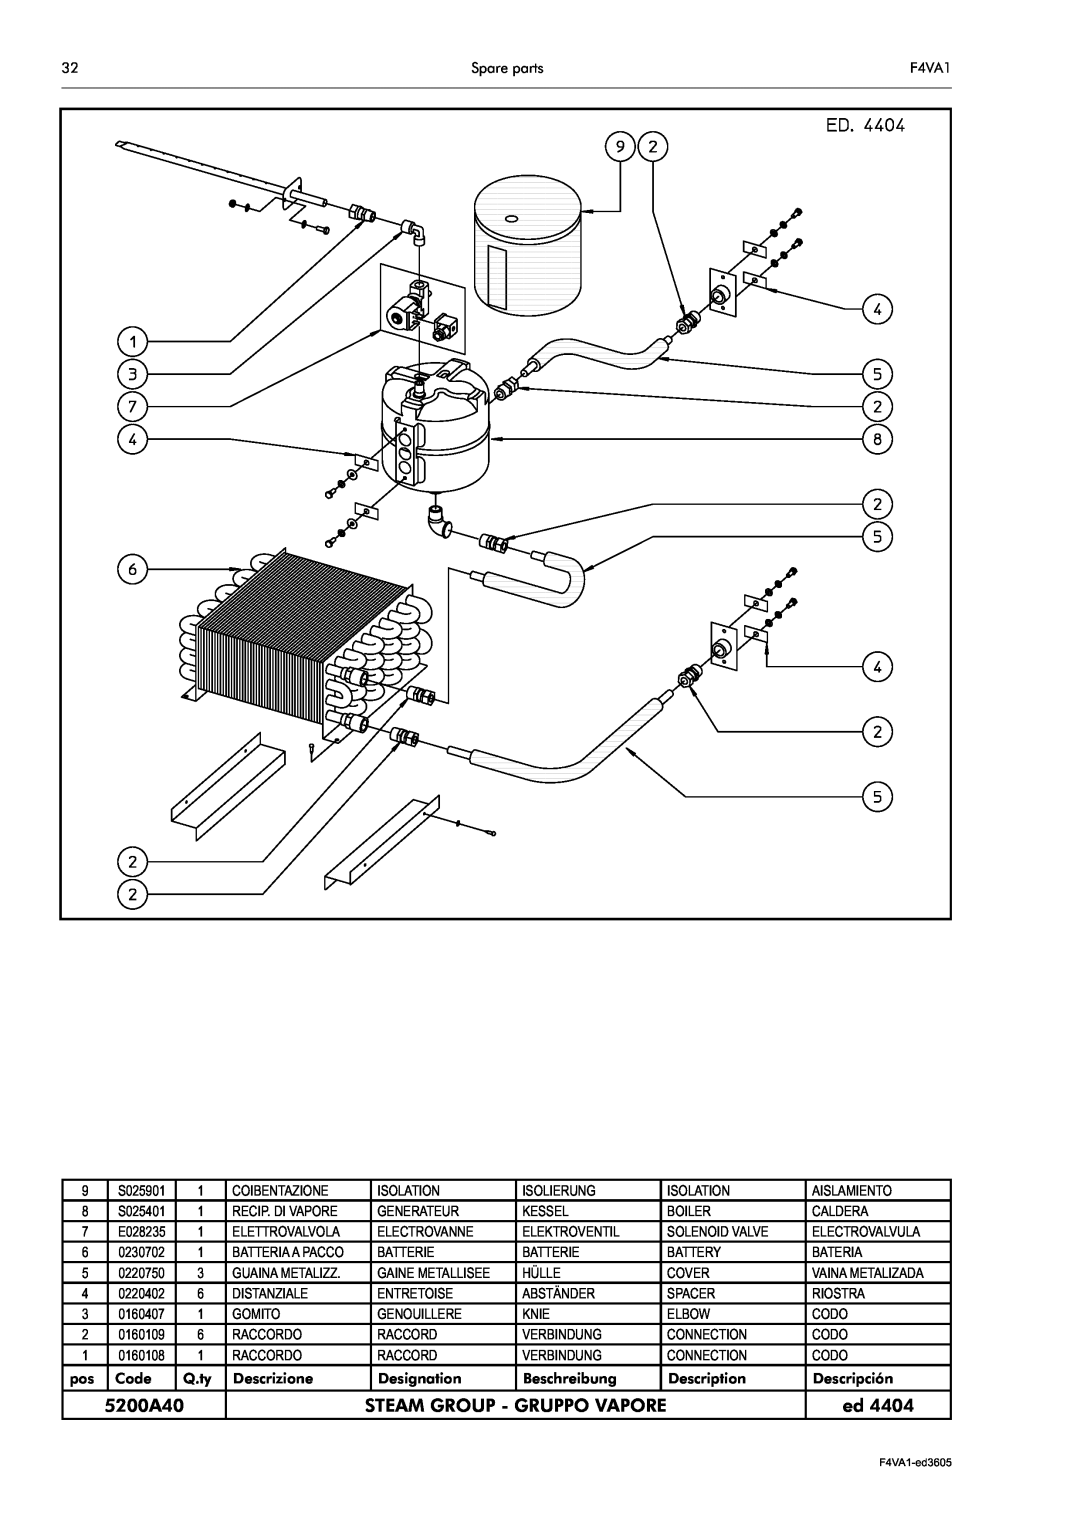 Electrolux F4VA1 manual 5200A40, Steam Group - Gruppo Vapore, S025401, E028235 